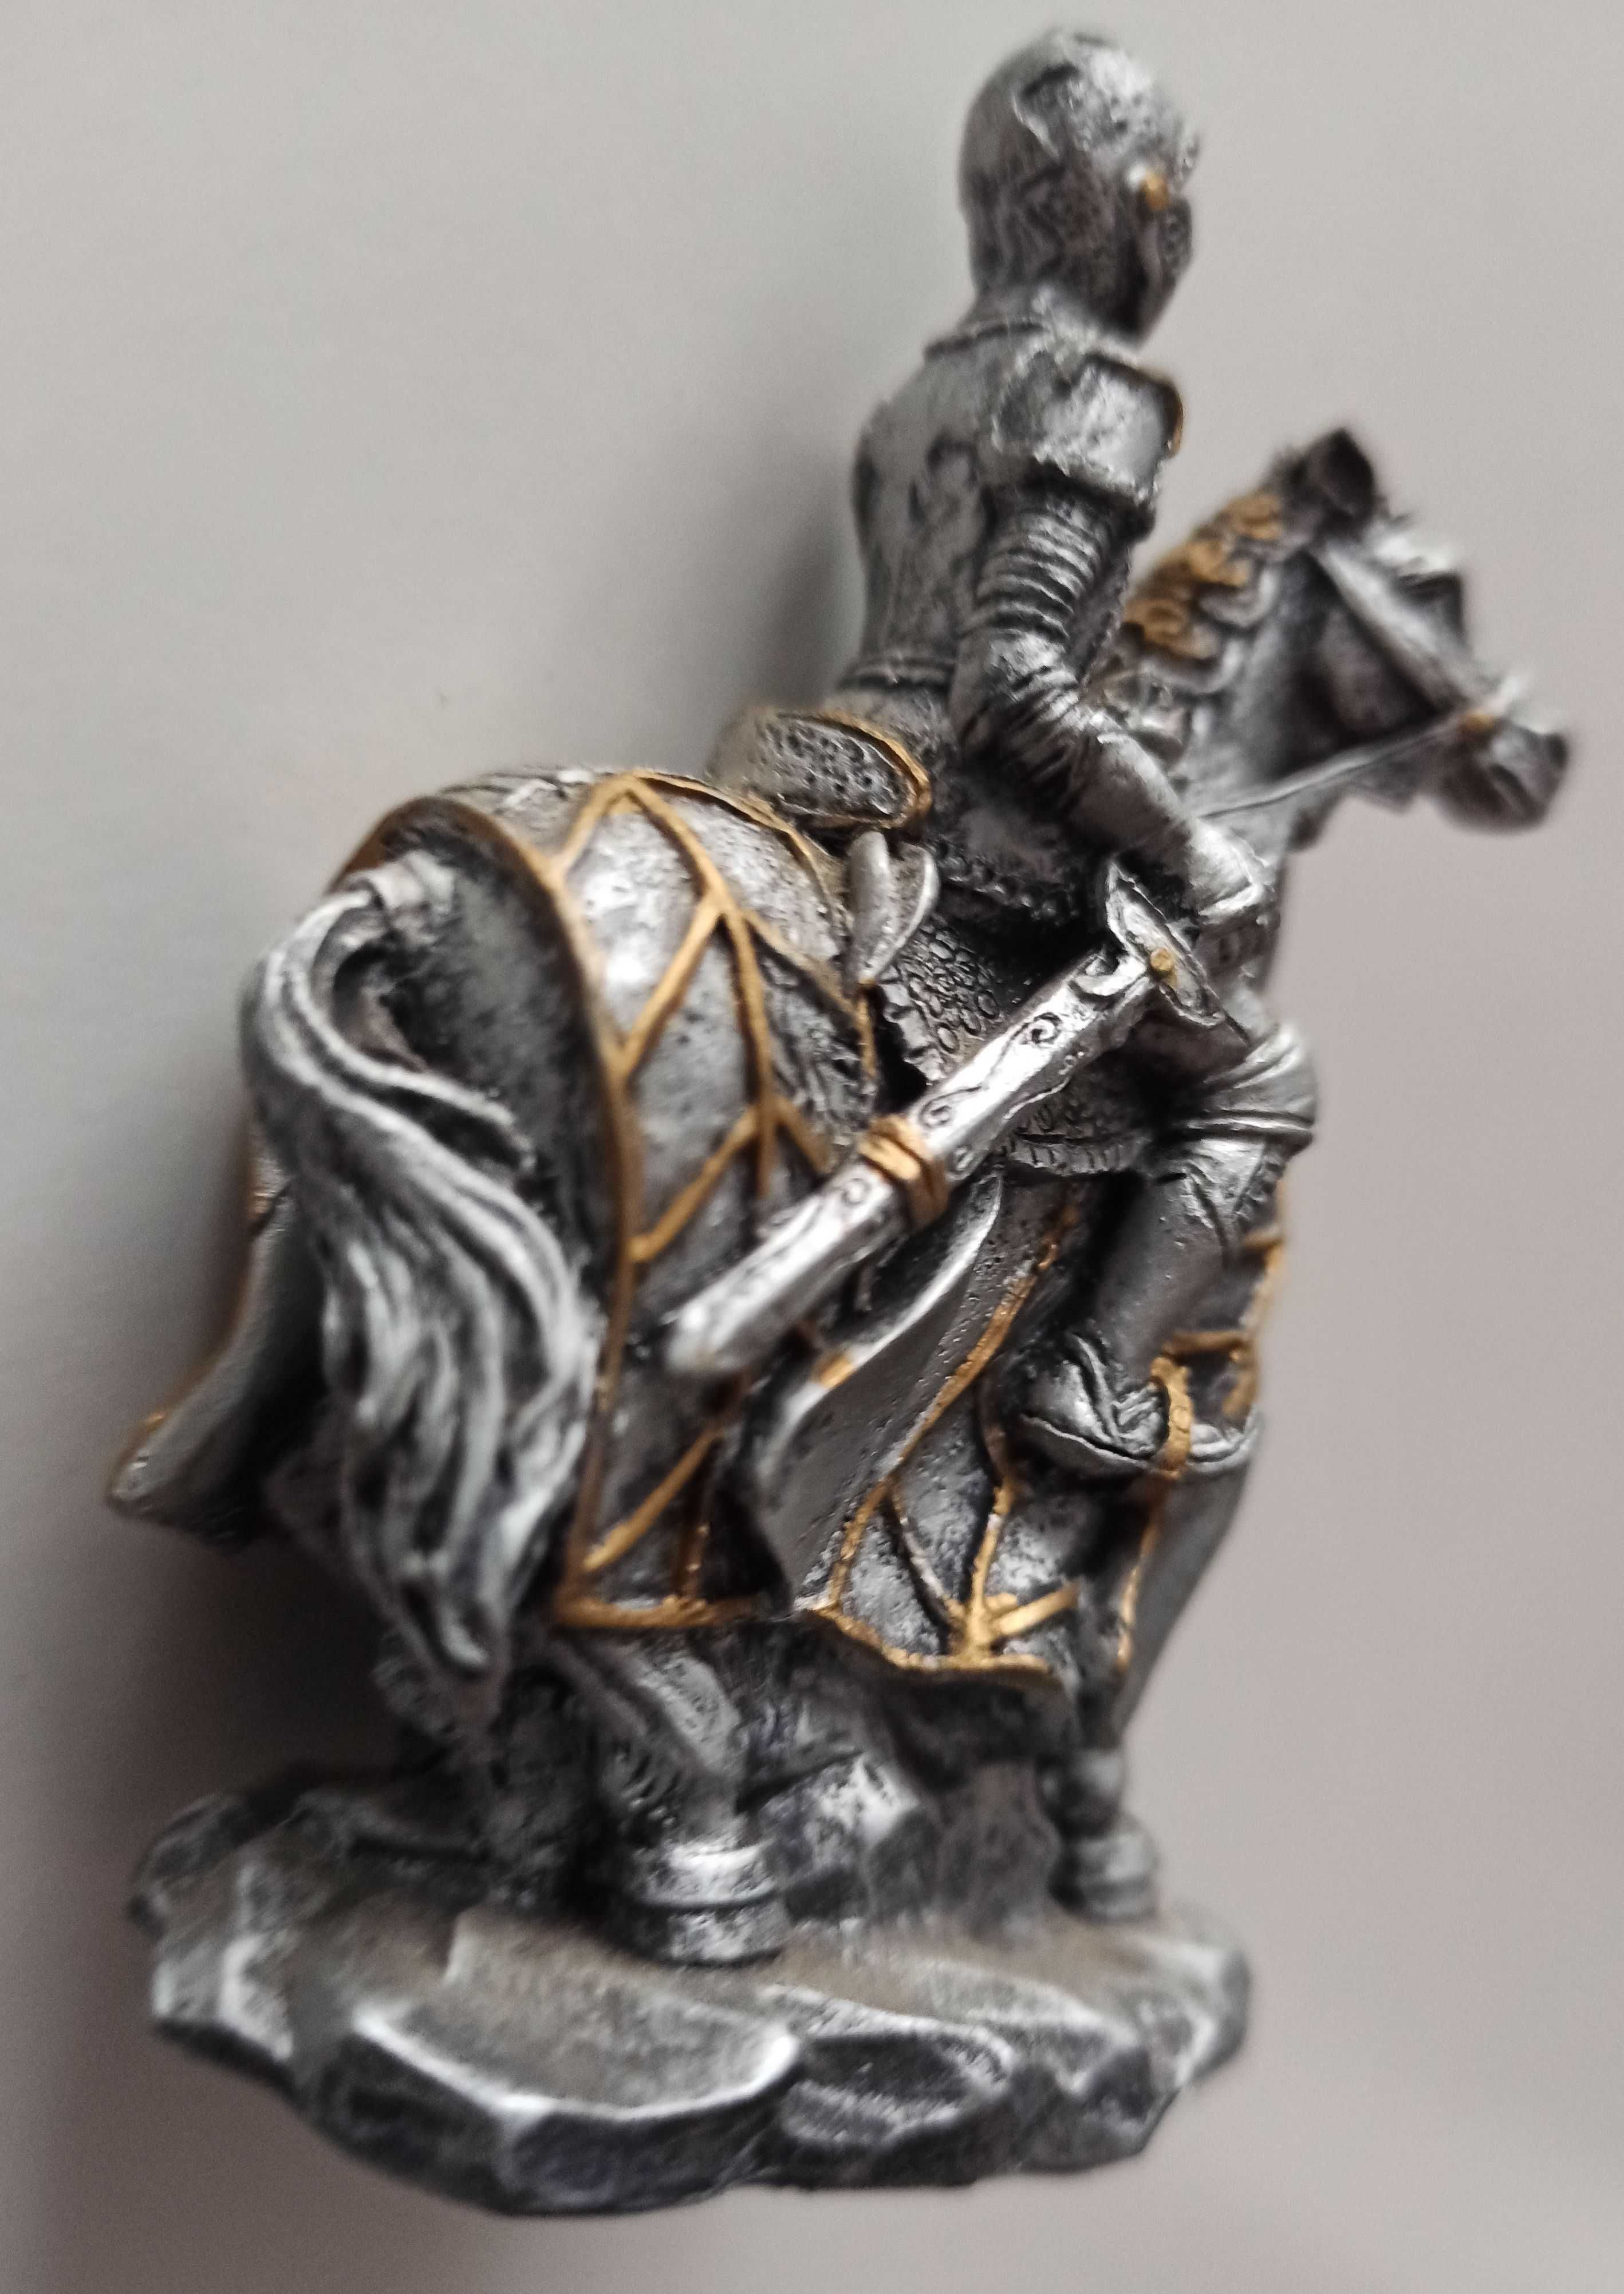 średniowieczny rycerz na koniu - kolekcjonerska figurka